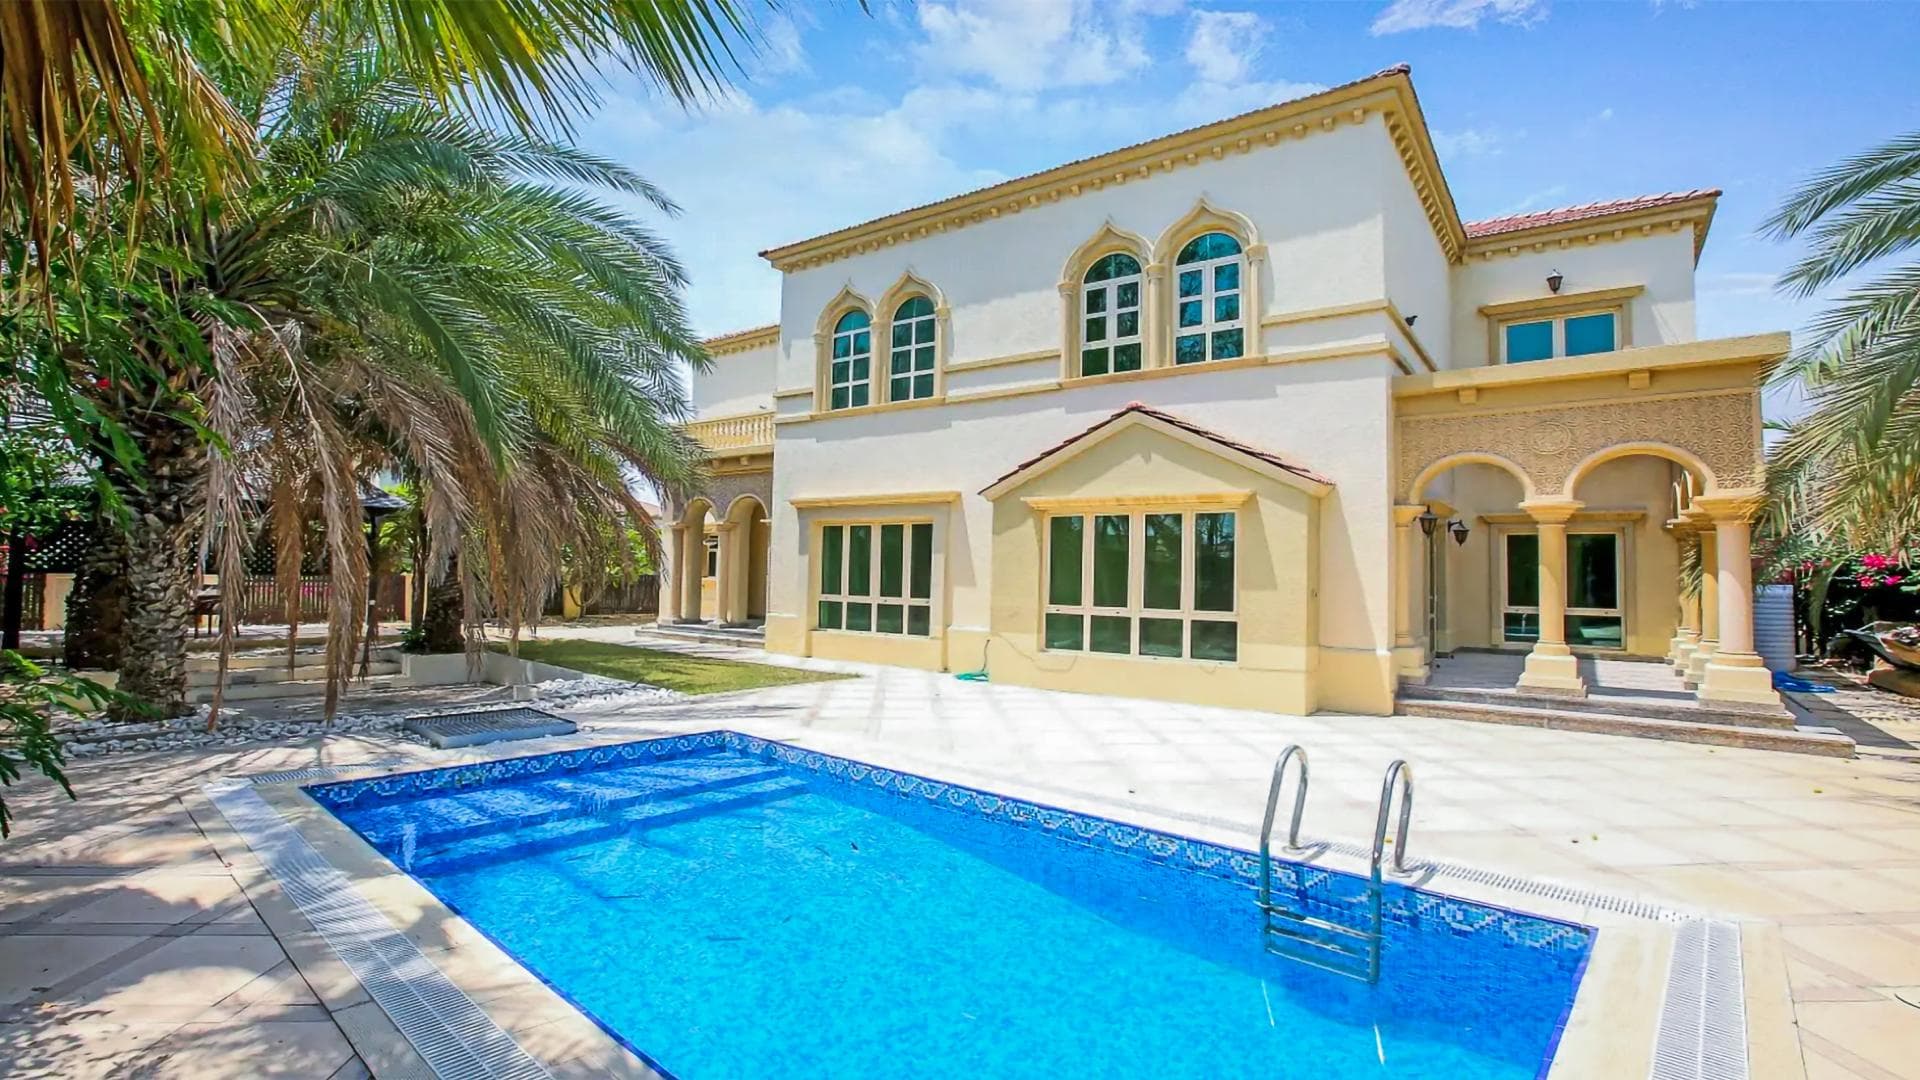 4 Bedroom Villa For Rent Al Thamam 13 Lp36706 1a7b1c3f5fcf0900.jpg